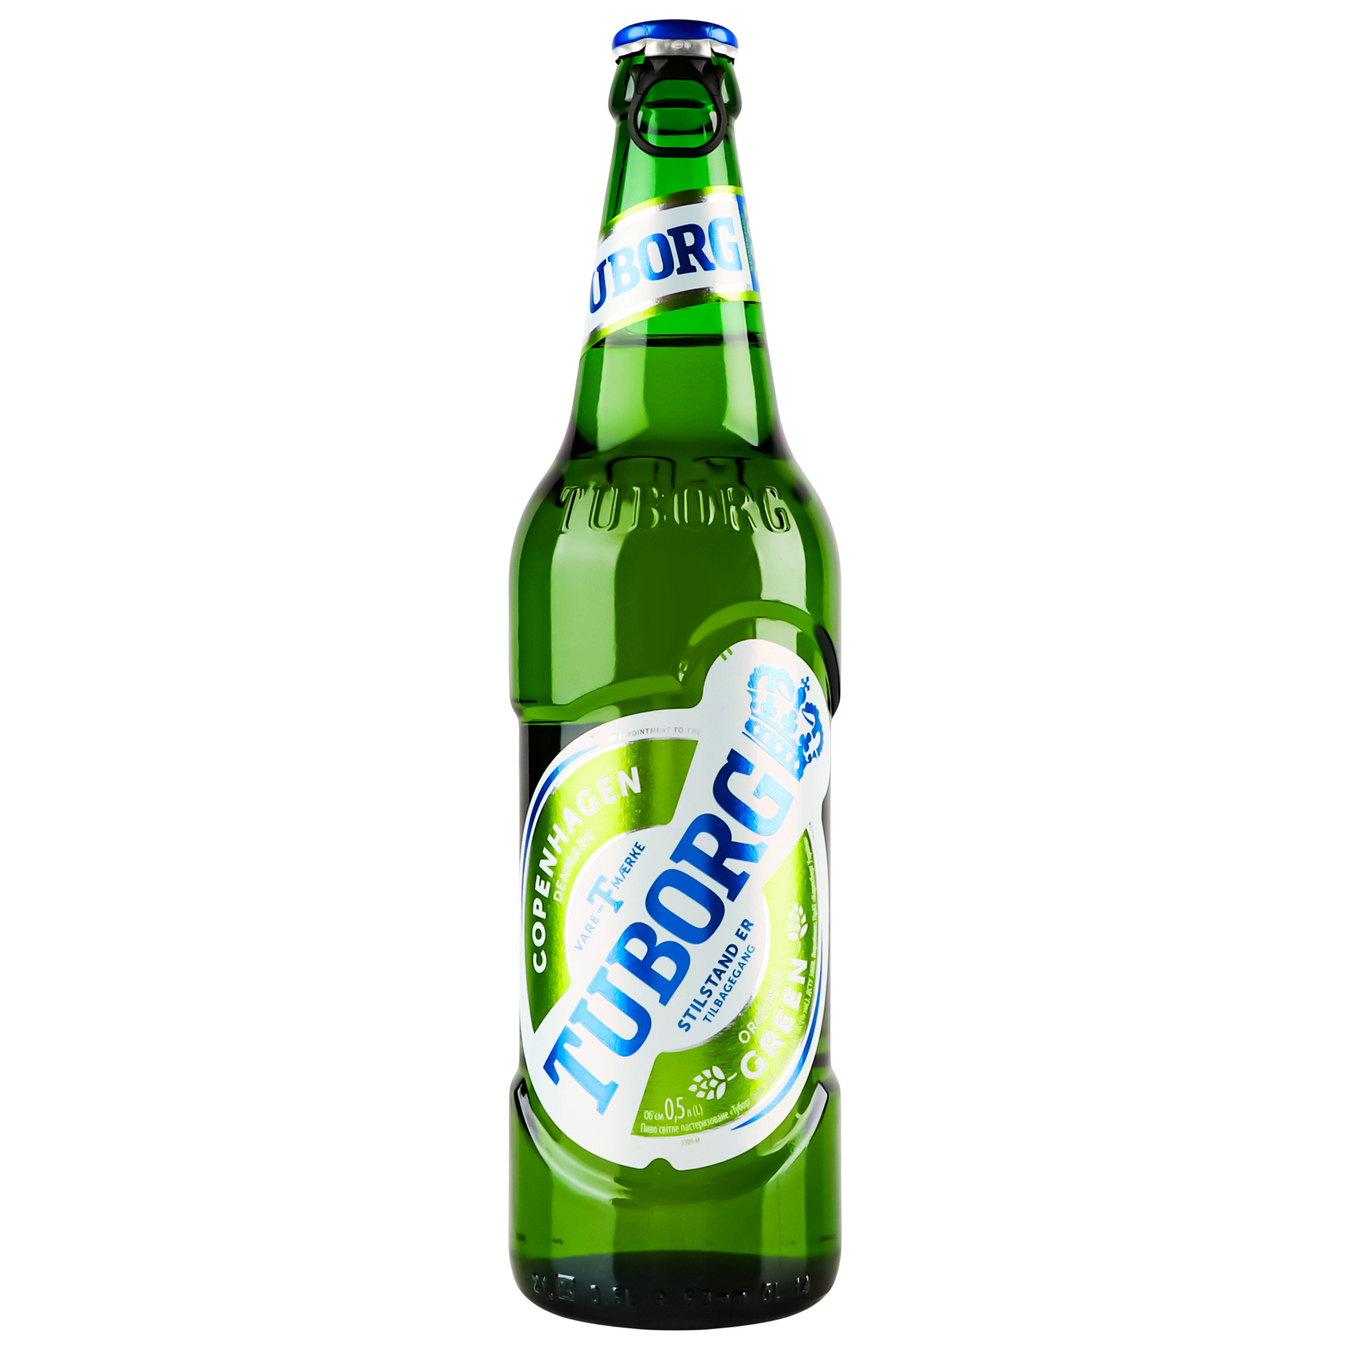 Пиво Tuborg Green светлое пастеризованное 4,6% 0,5л